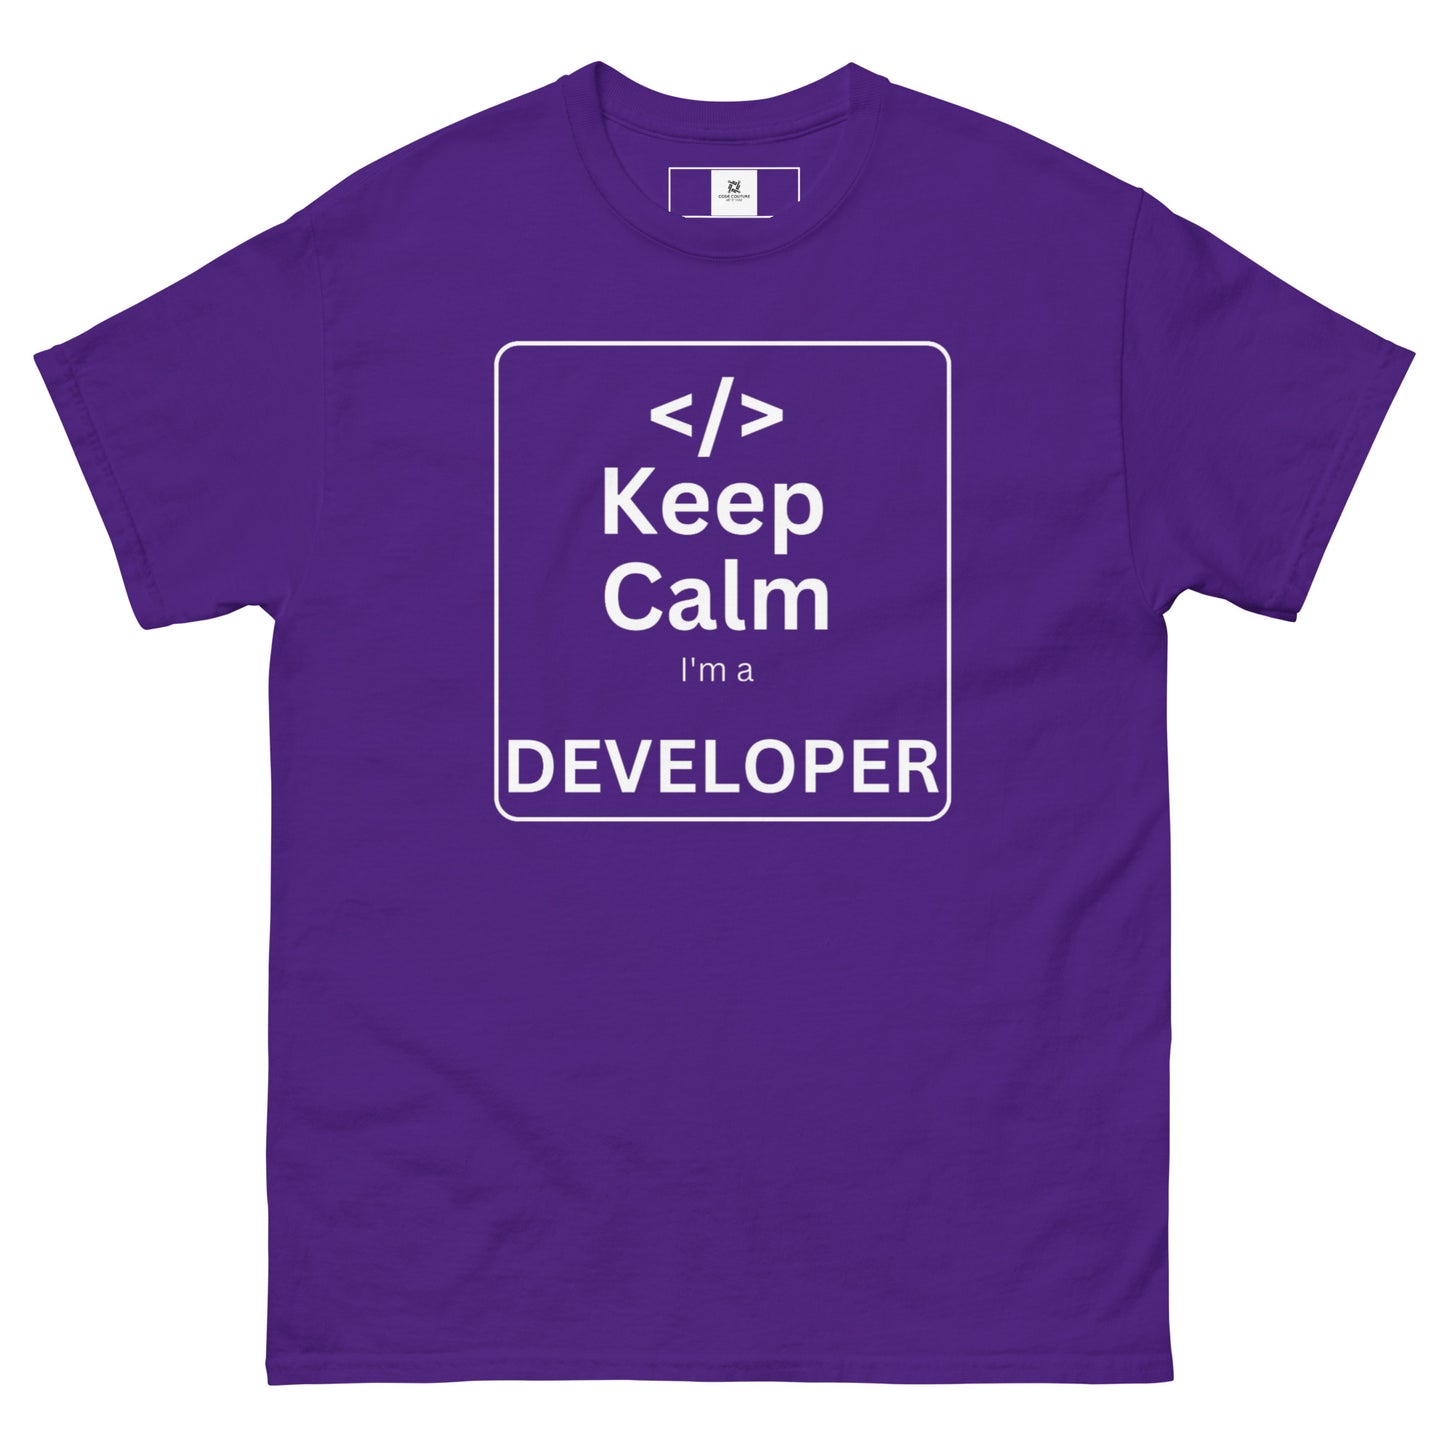 Developer - Keep Calm - Dark